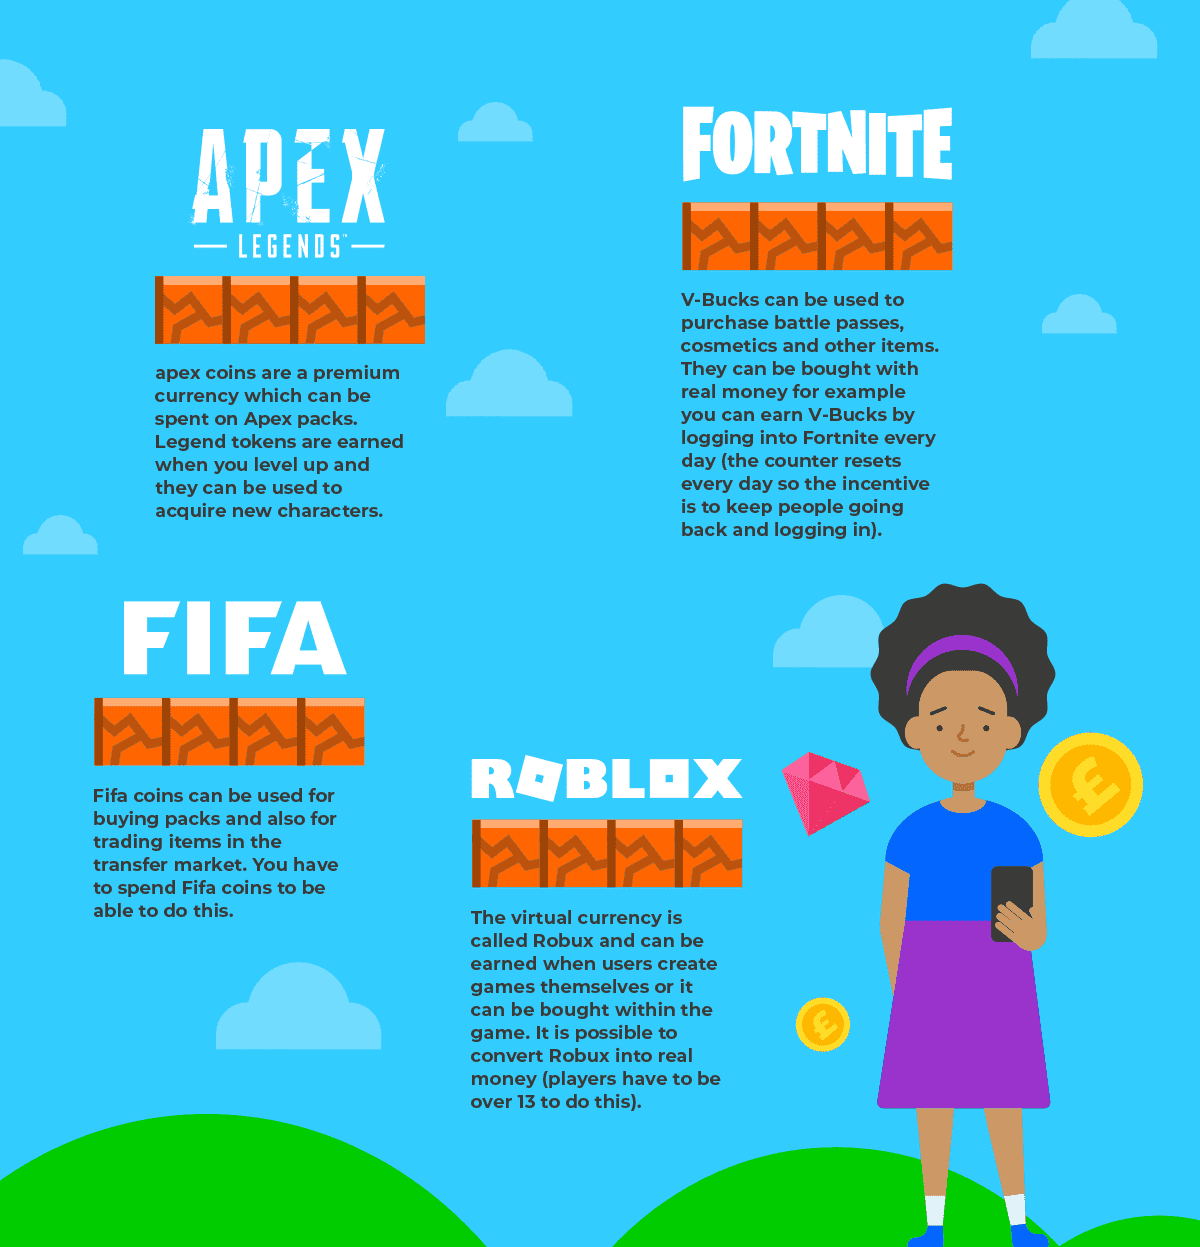 信息图概述了 Apex Legends、Fortnite、FIFA 和 Roblox 如何使用游戏内支出。